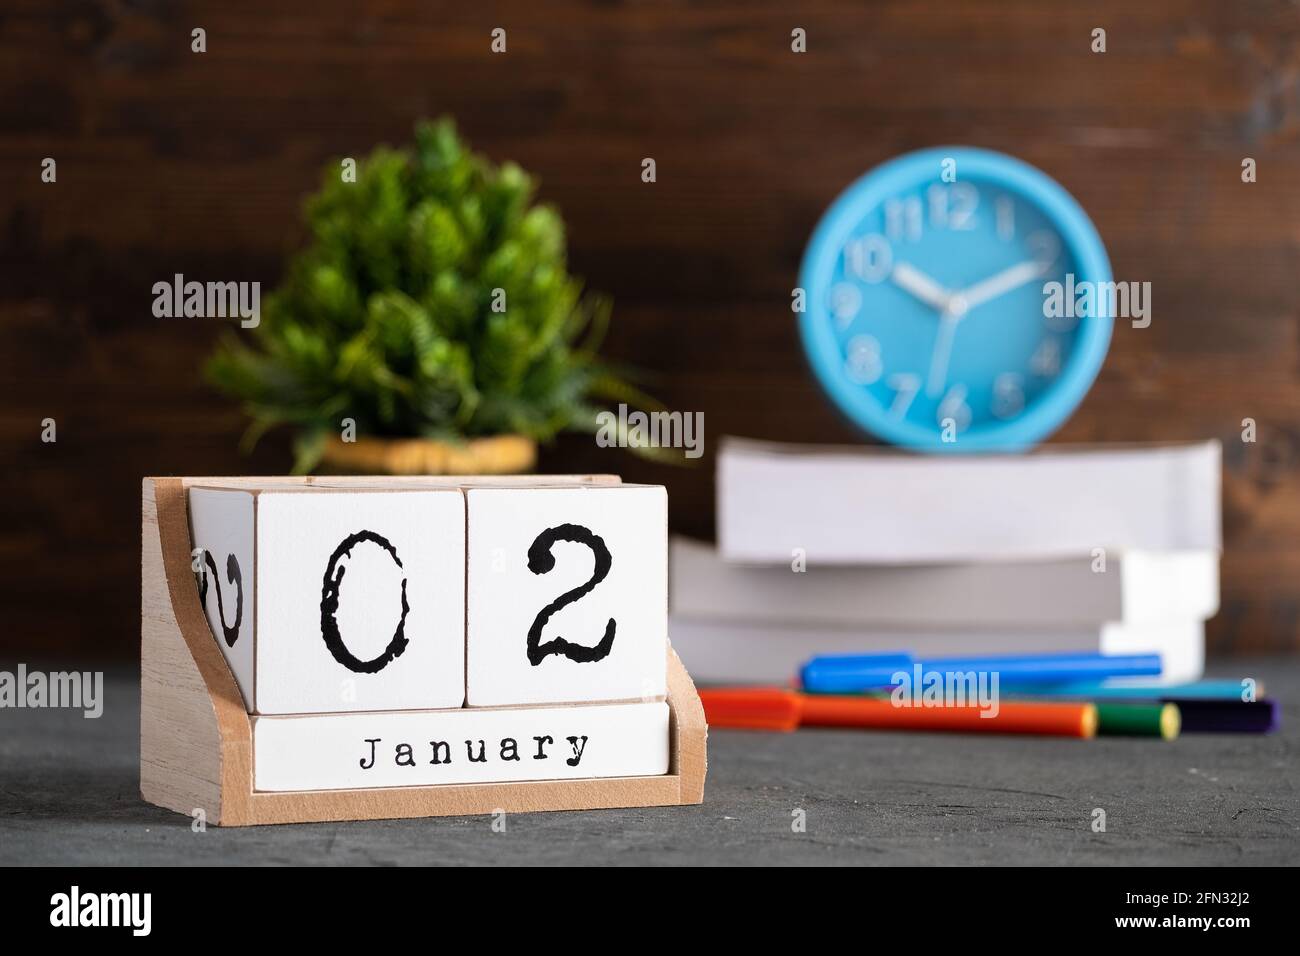 02 janvier. Janvier 02 calendrier cube en bois avec des objets flous sur fond. Banque D'Images